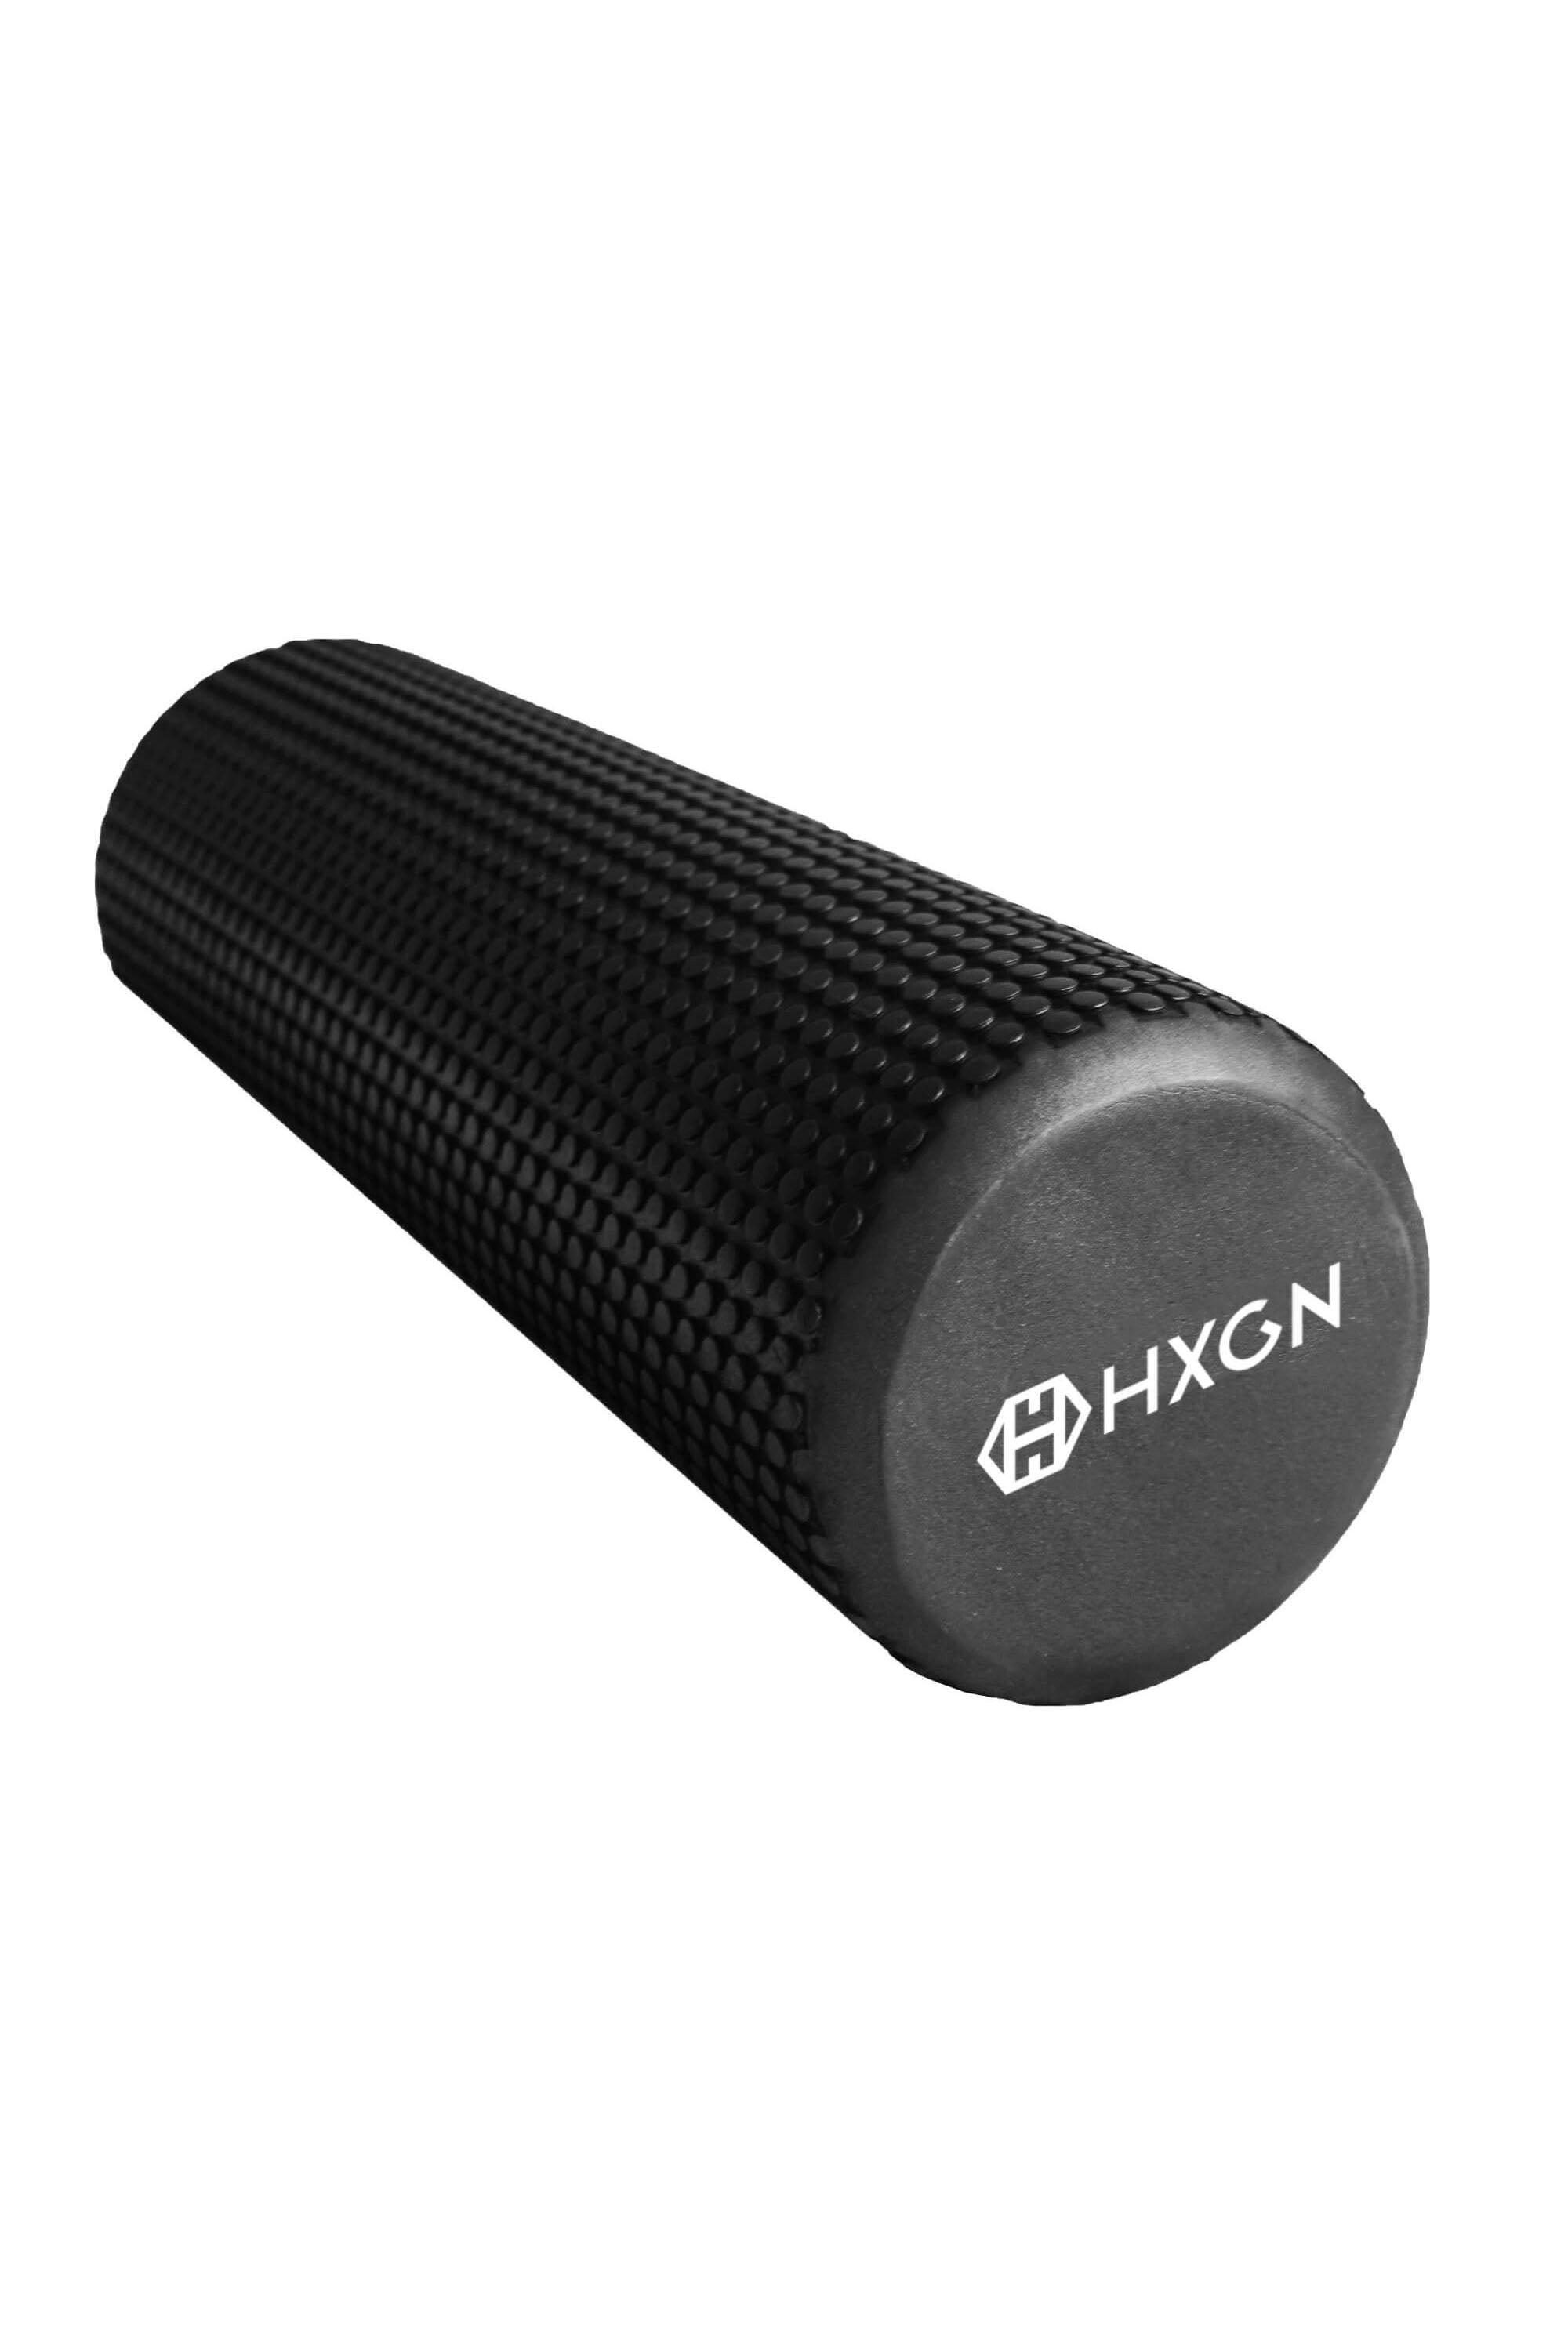 HXGN Muscle Foam Roller|black